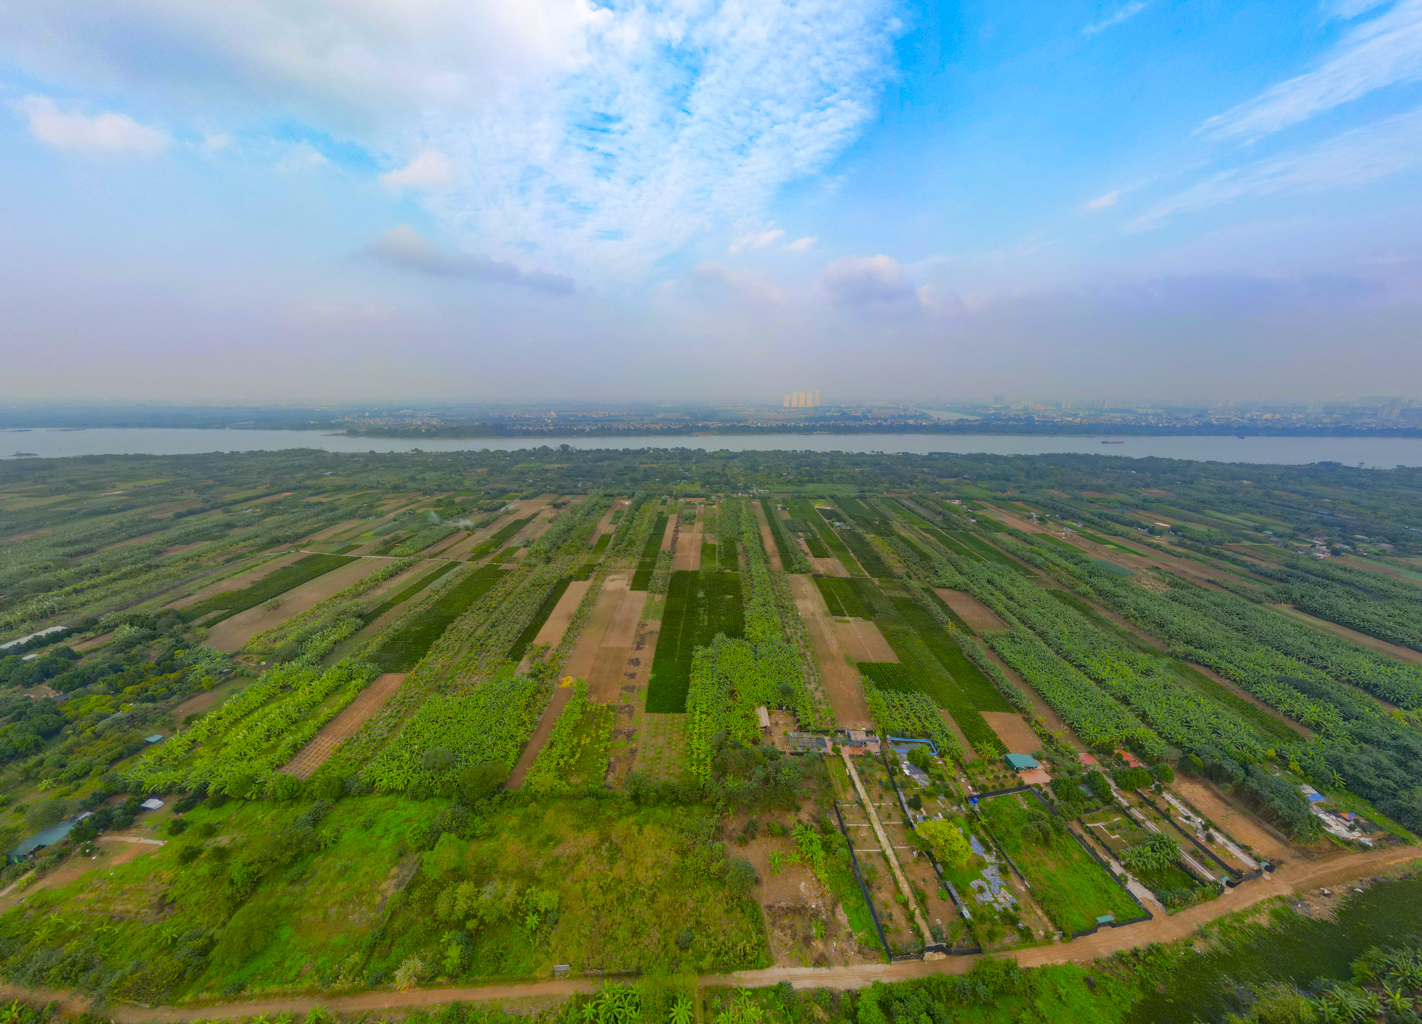 Quỹ đất lớn duy nhất còn sót lại ở Hà Nội, rộng bằng 8 quận nội thành, có nơi cách hồ Gươm chỉ vài phút đi xe- Ảnh 2.